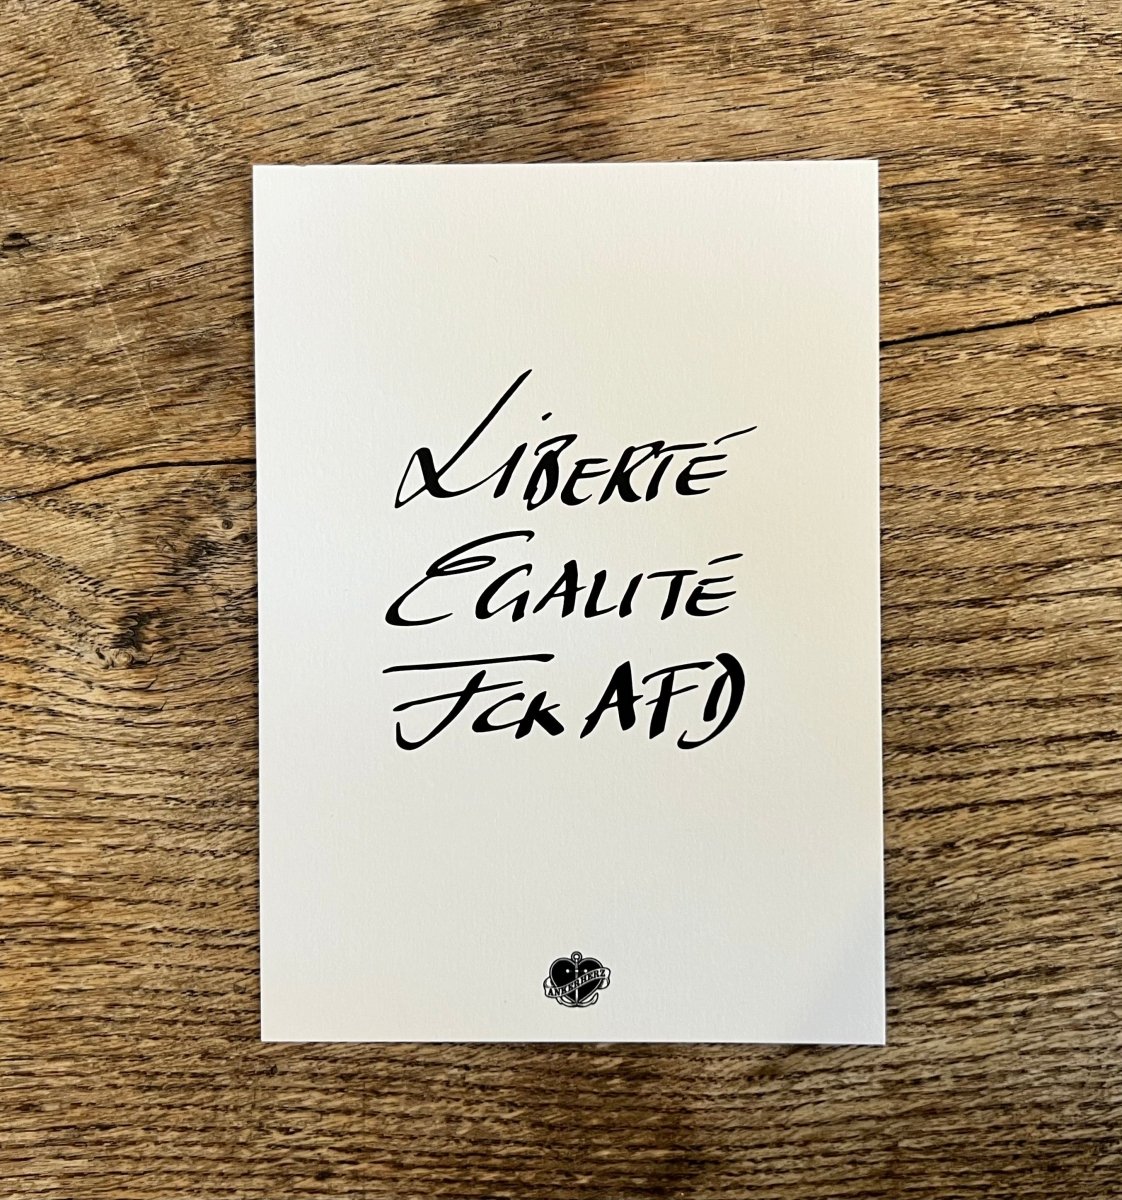 Postkarte Liberté, Egaltité, FCK AFD - Ankerherz Verlag